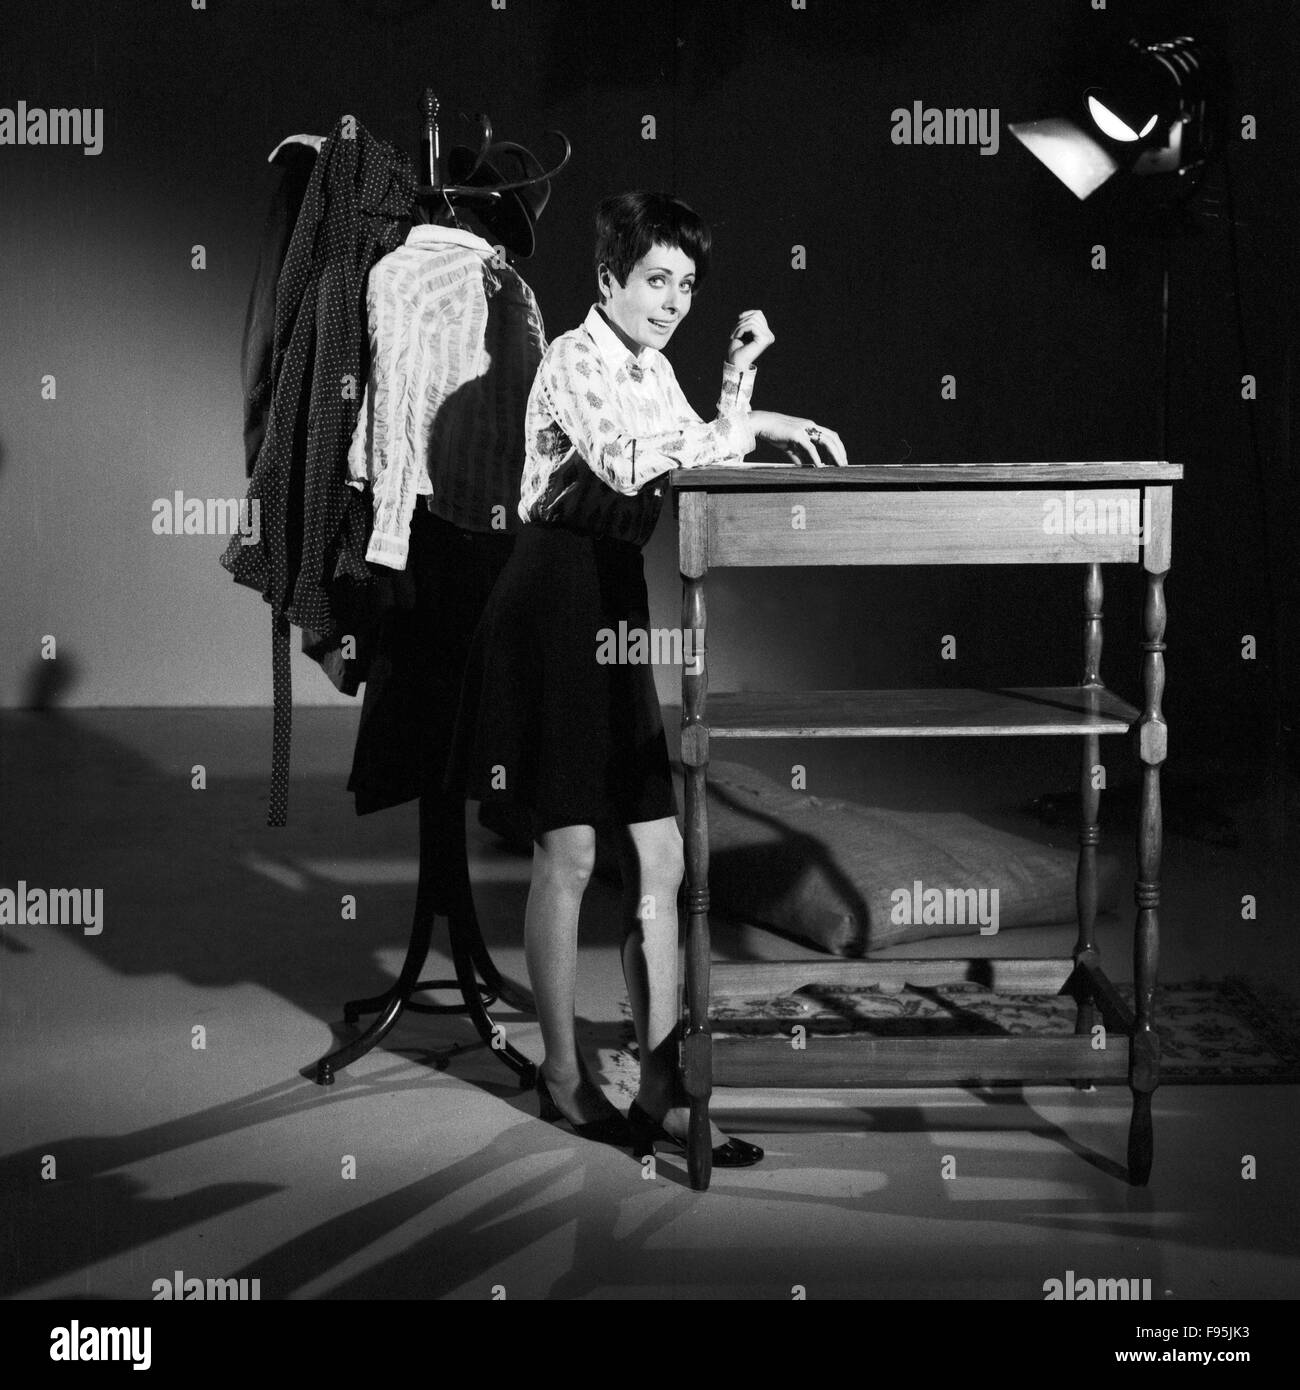 Deutsche Drehbuchautorin und Fernsehansagerin Ann Ladiges, Deutschland 1968. The German screenplay writer and television announcer Ann Ladiges, Germany 1968. Stock Photo